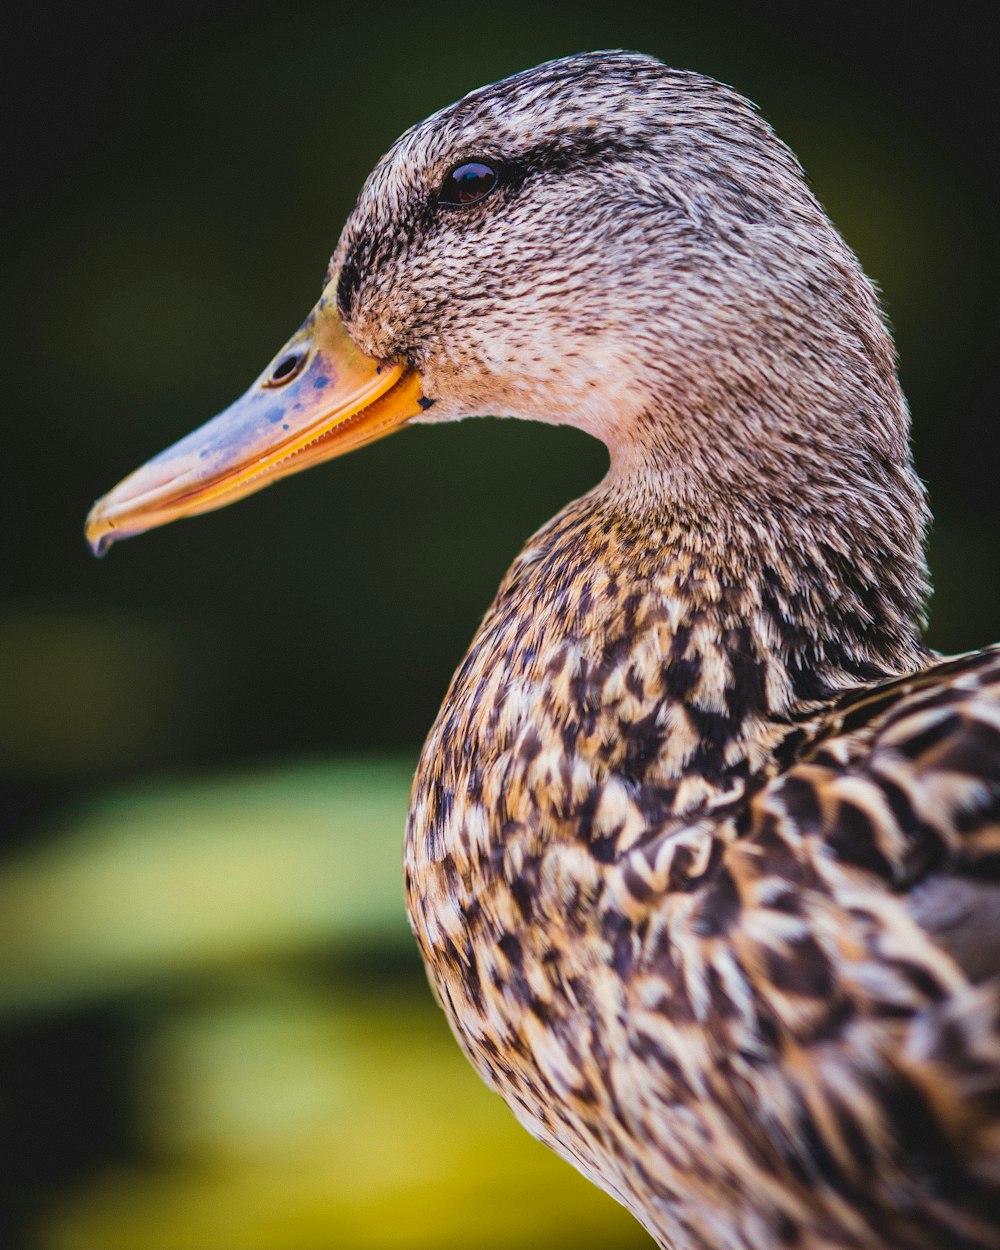 brown duck in tilt shift lens